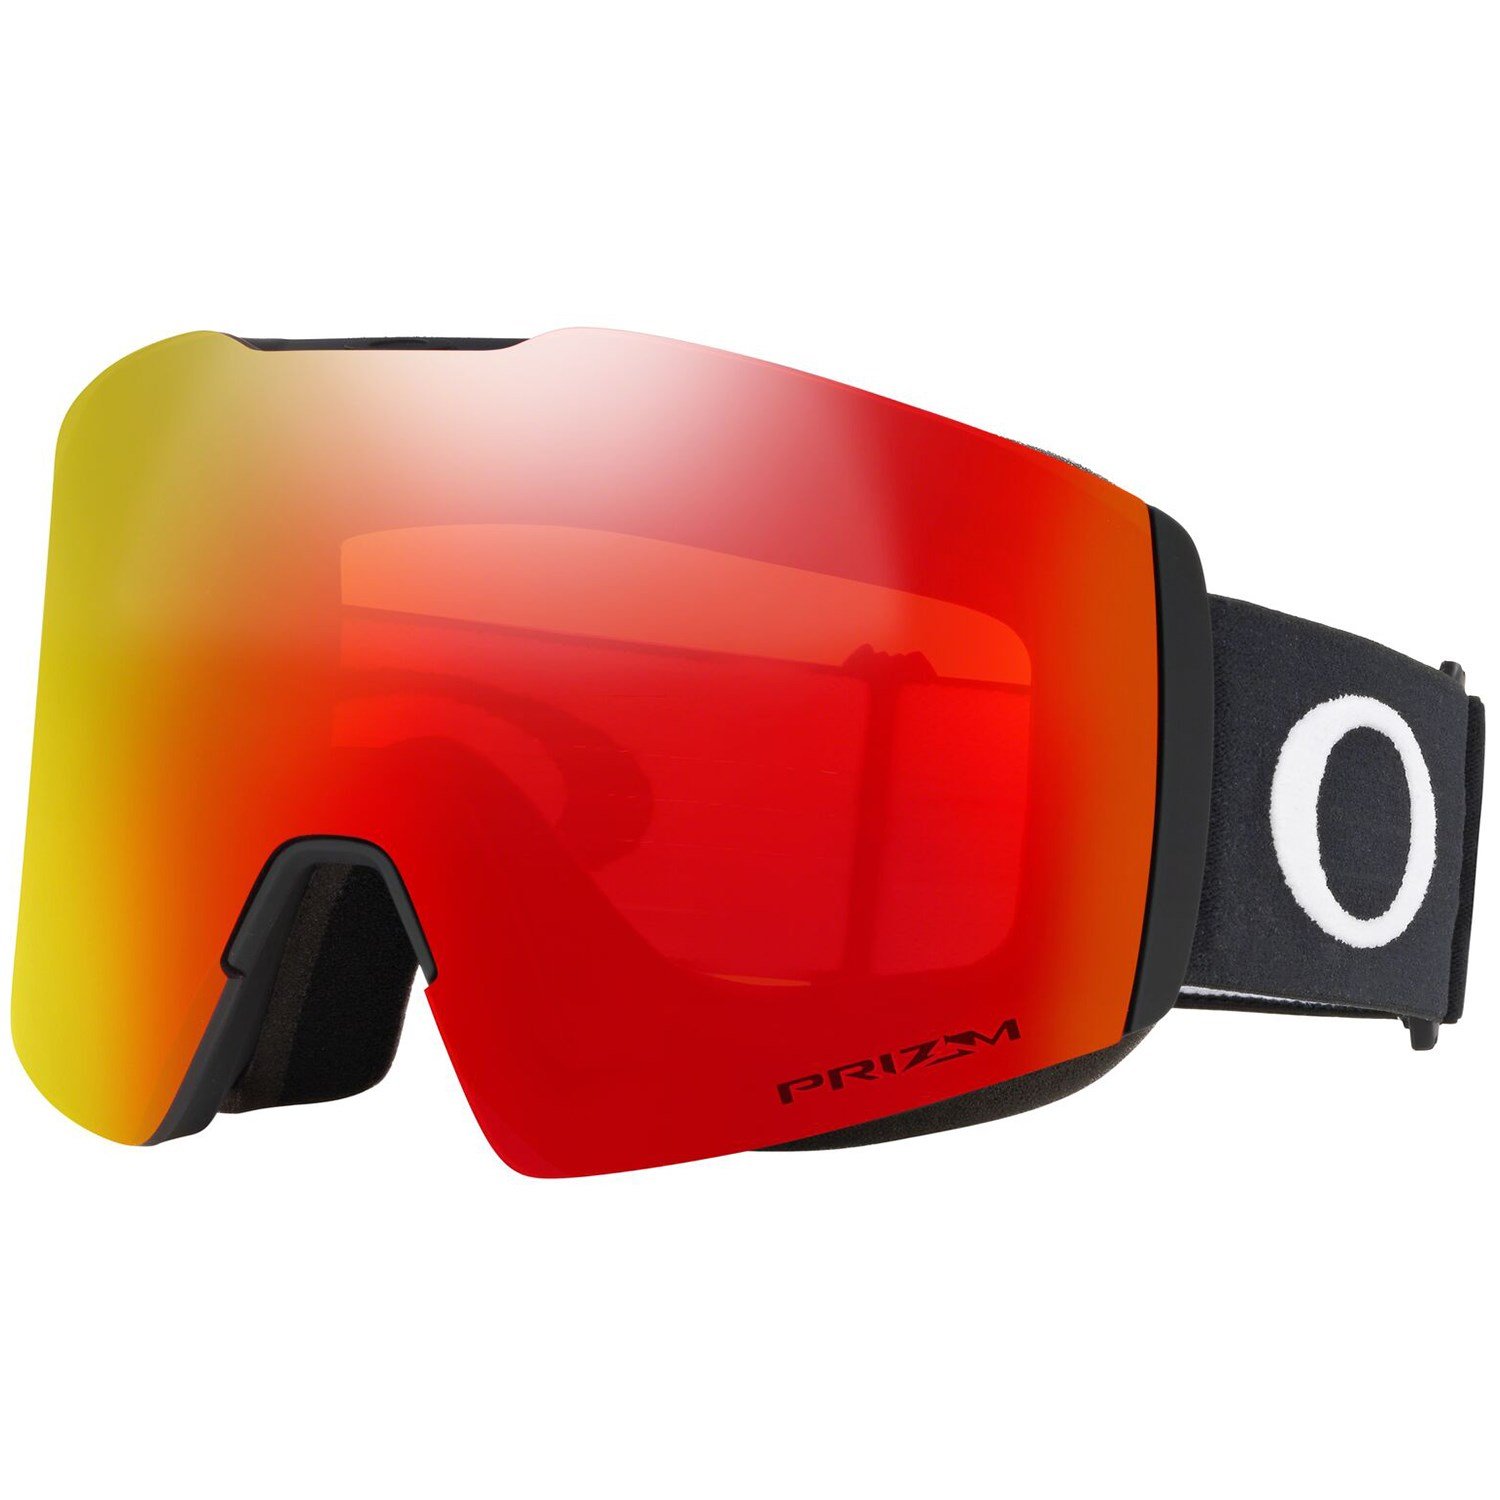 oakley fall line ski goggles